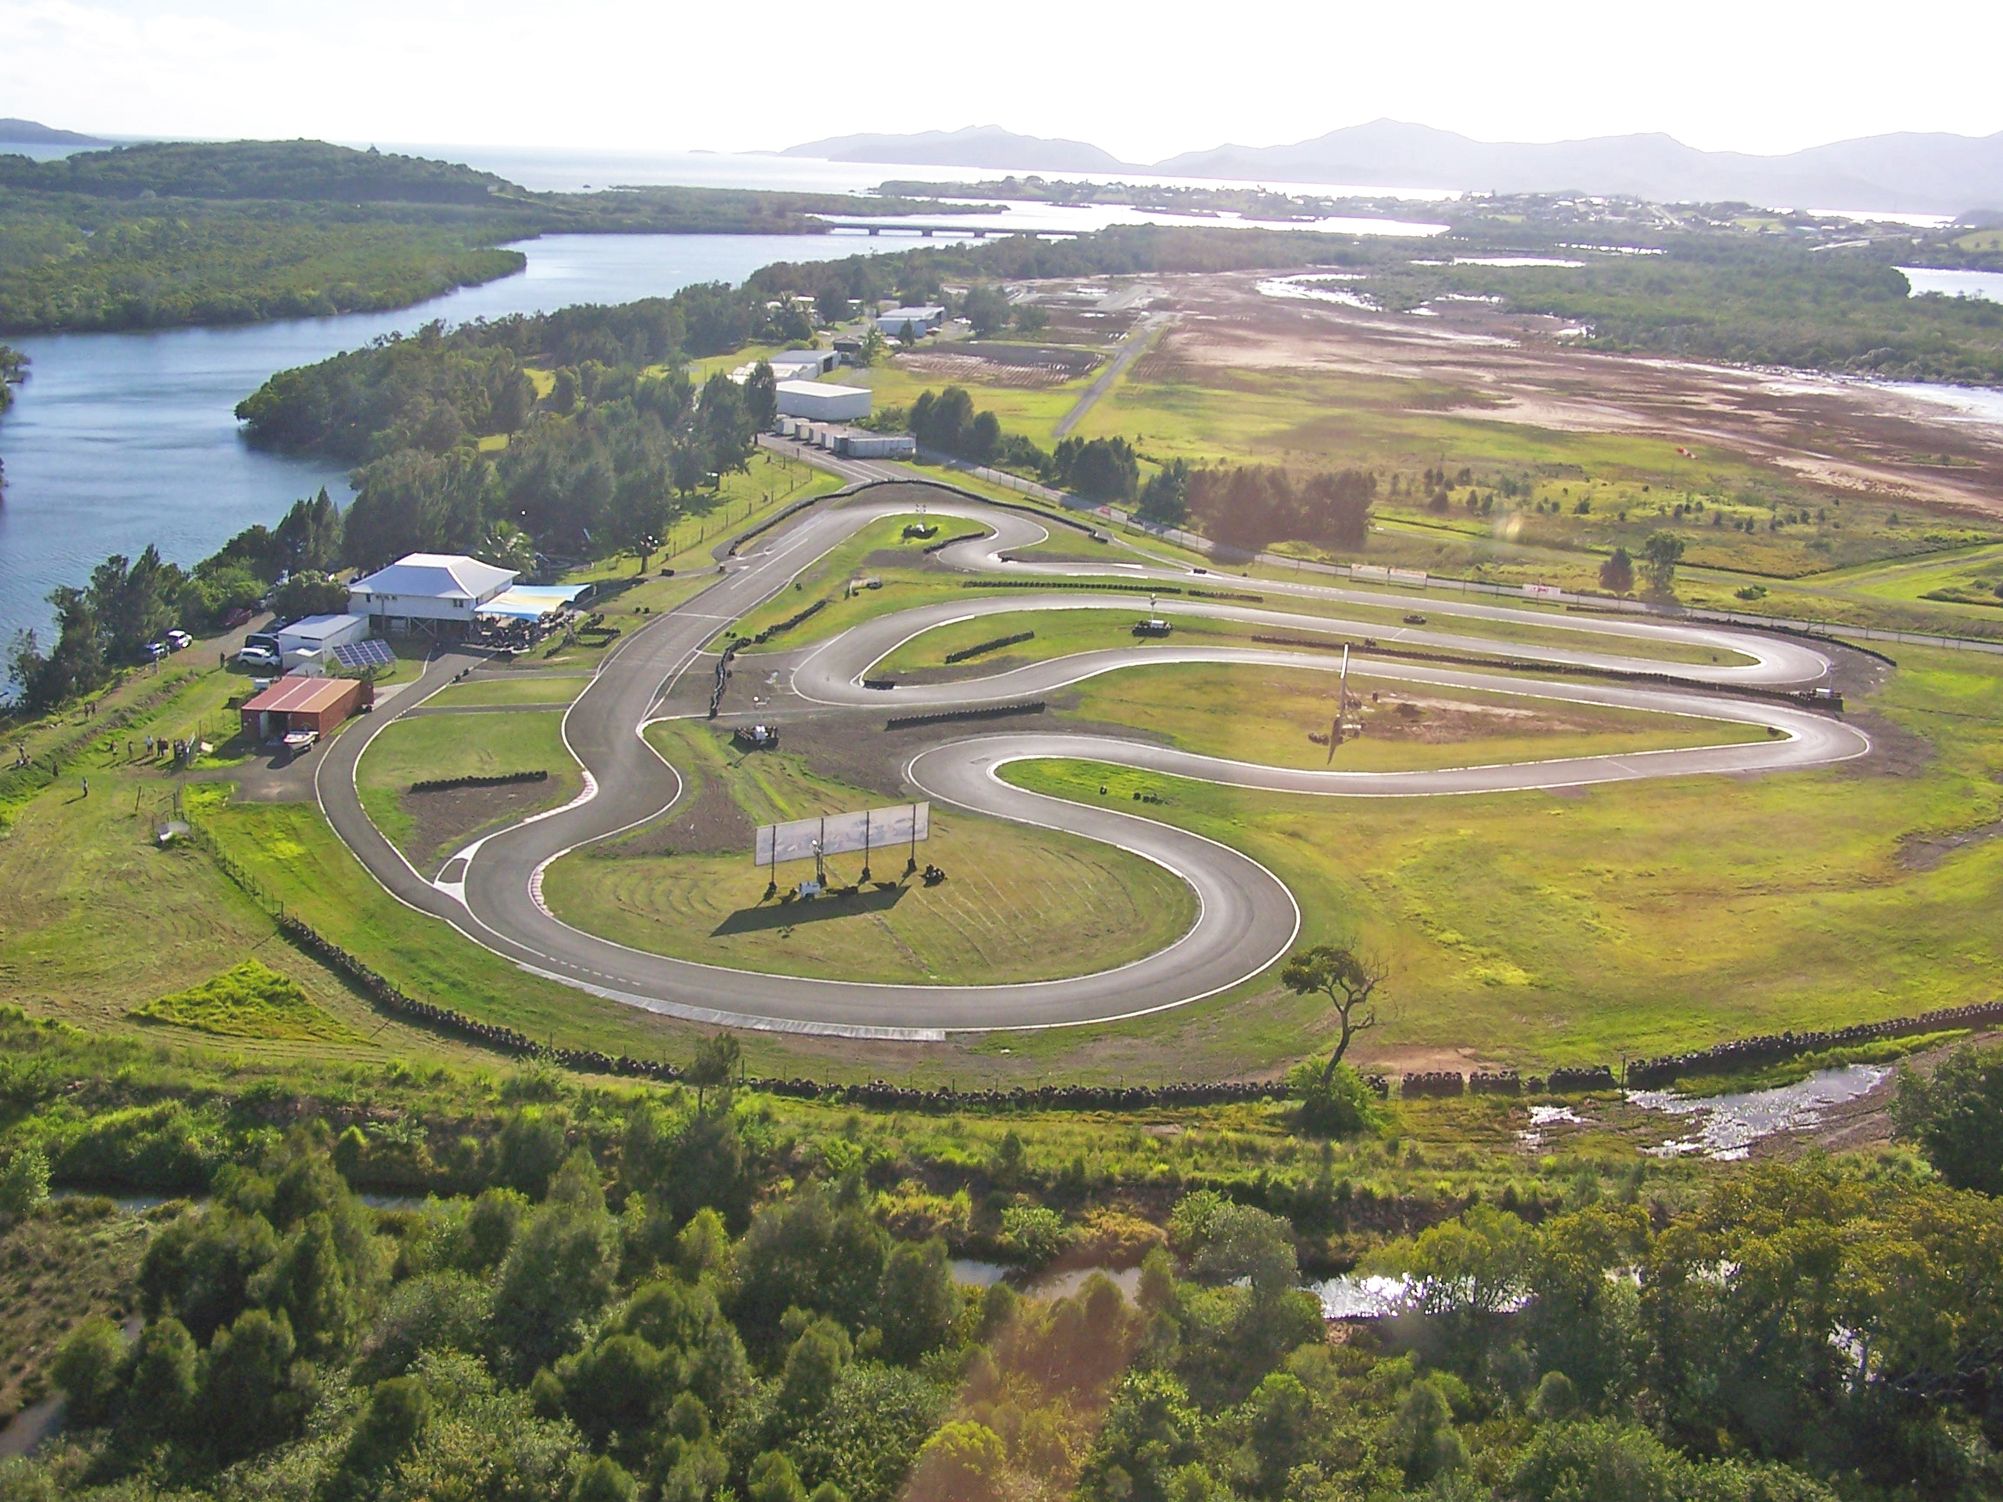 La piste de karting, large de 7 mètres opère une grande boucle de 862 mètres à proximité de La Dumbéa. 